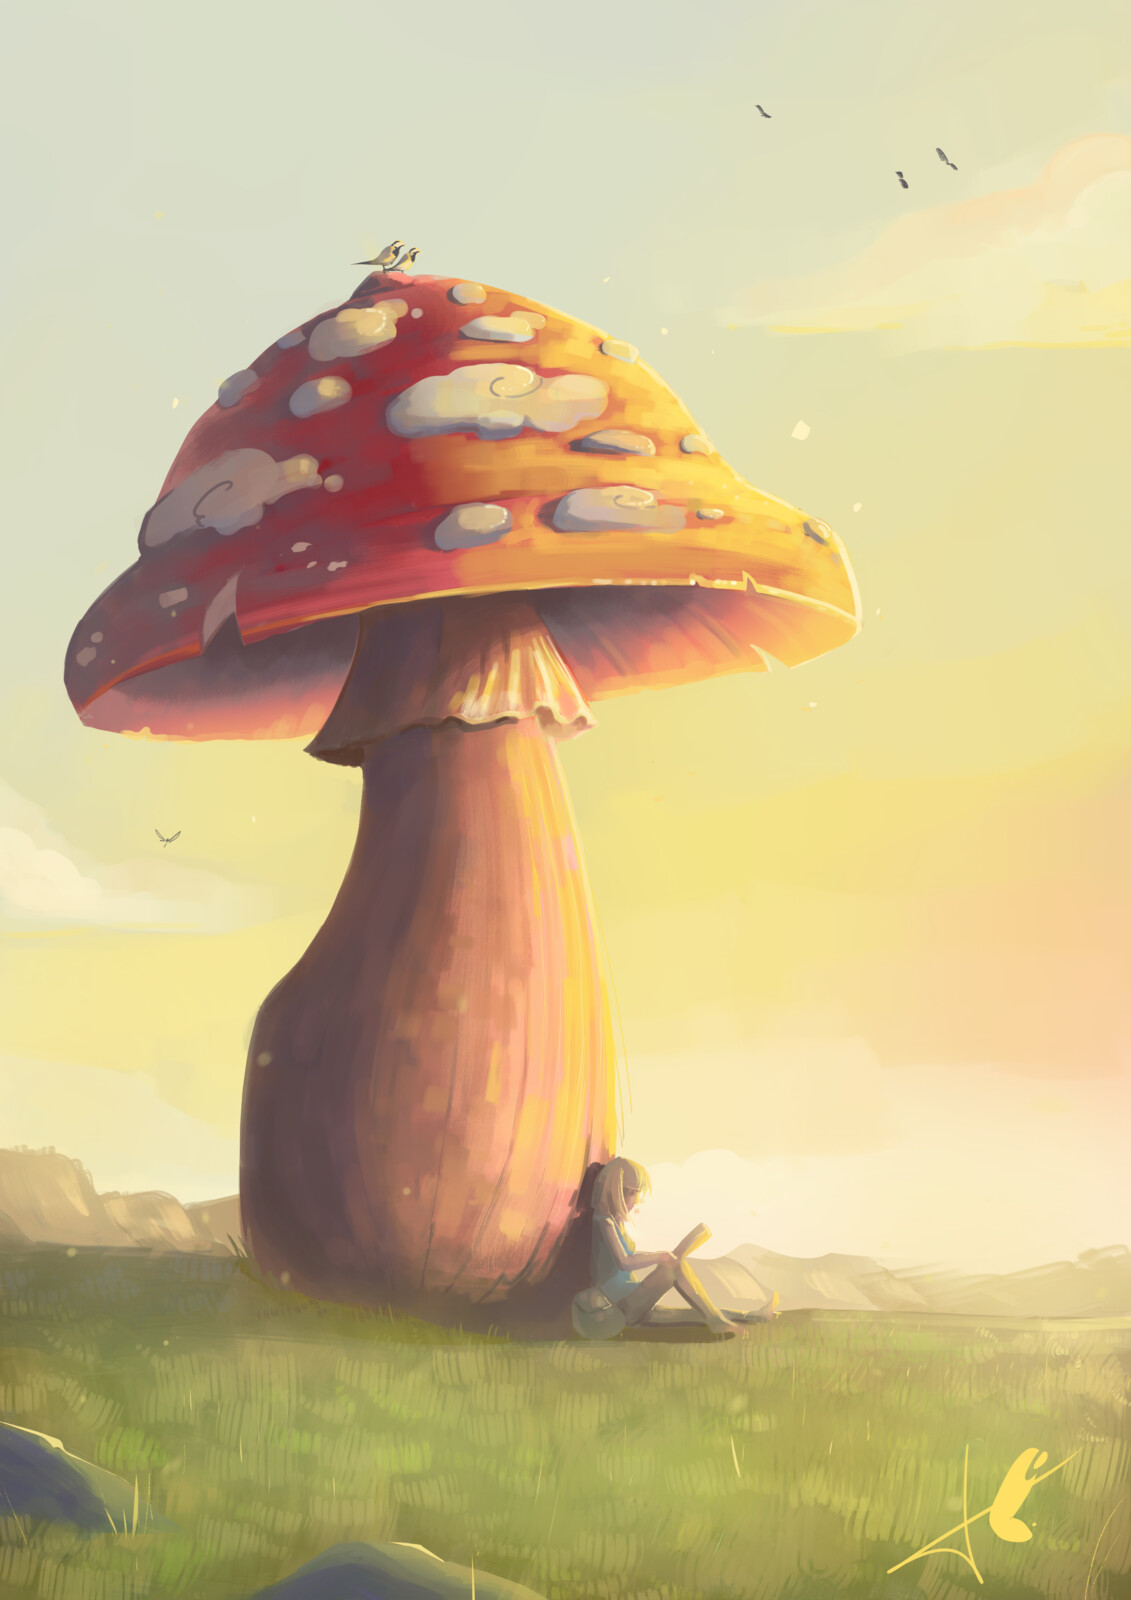 A Big Mushroom